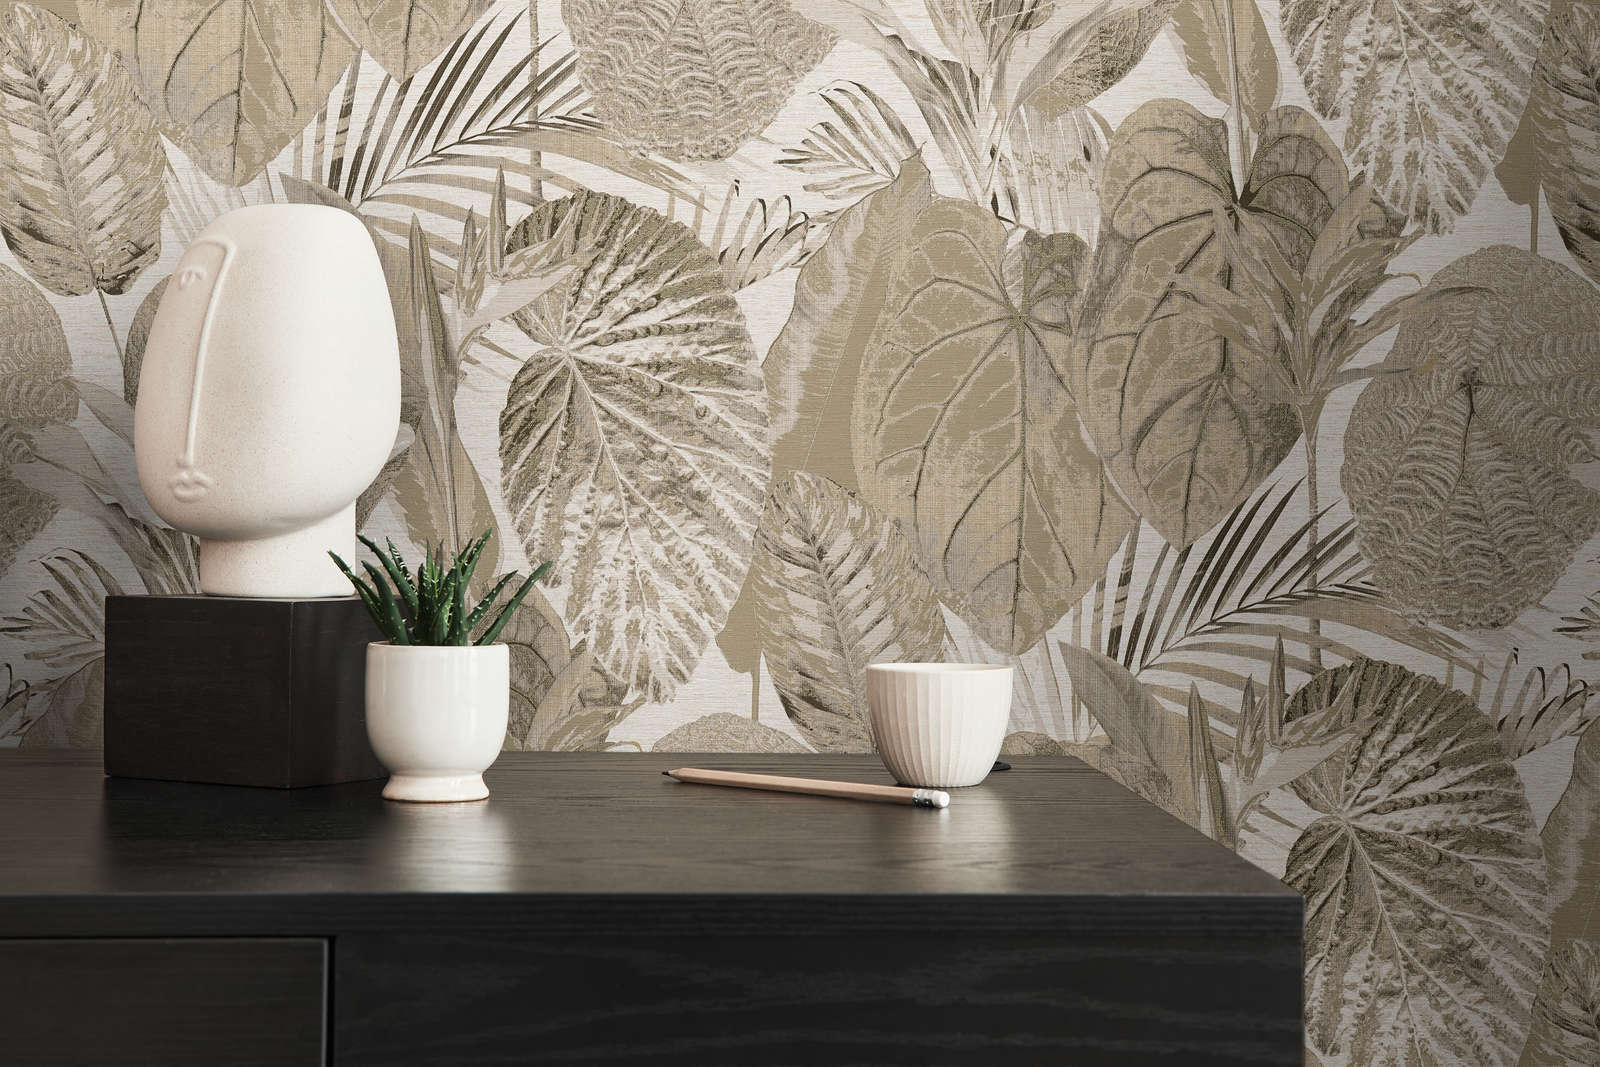             Jungle pattern wallpaper lightly textured, matt - beige, taupe
        